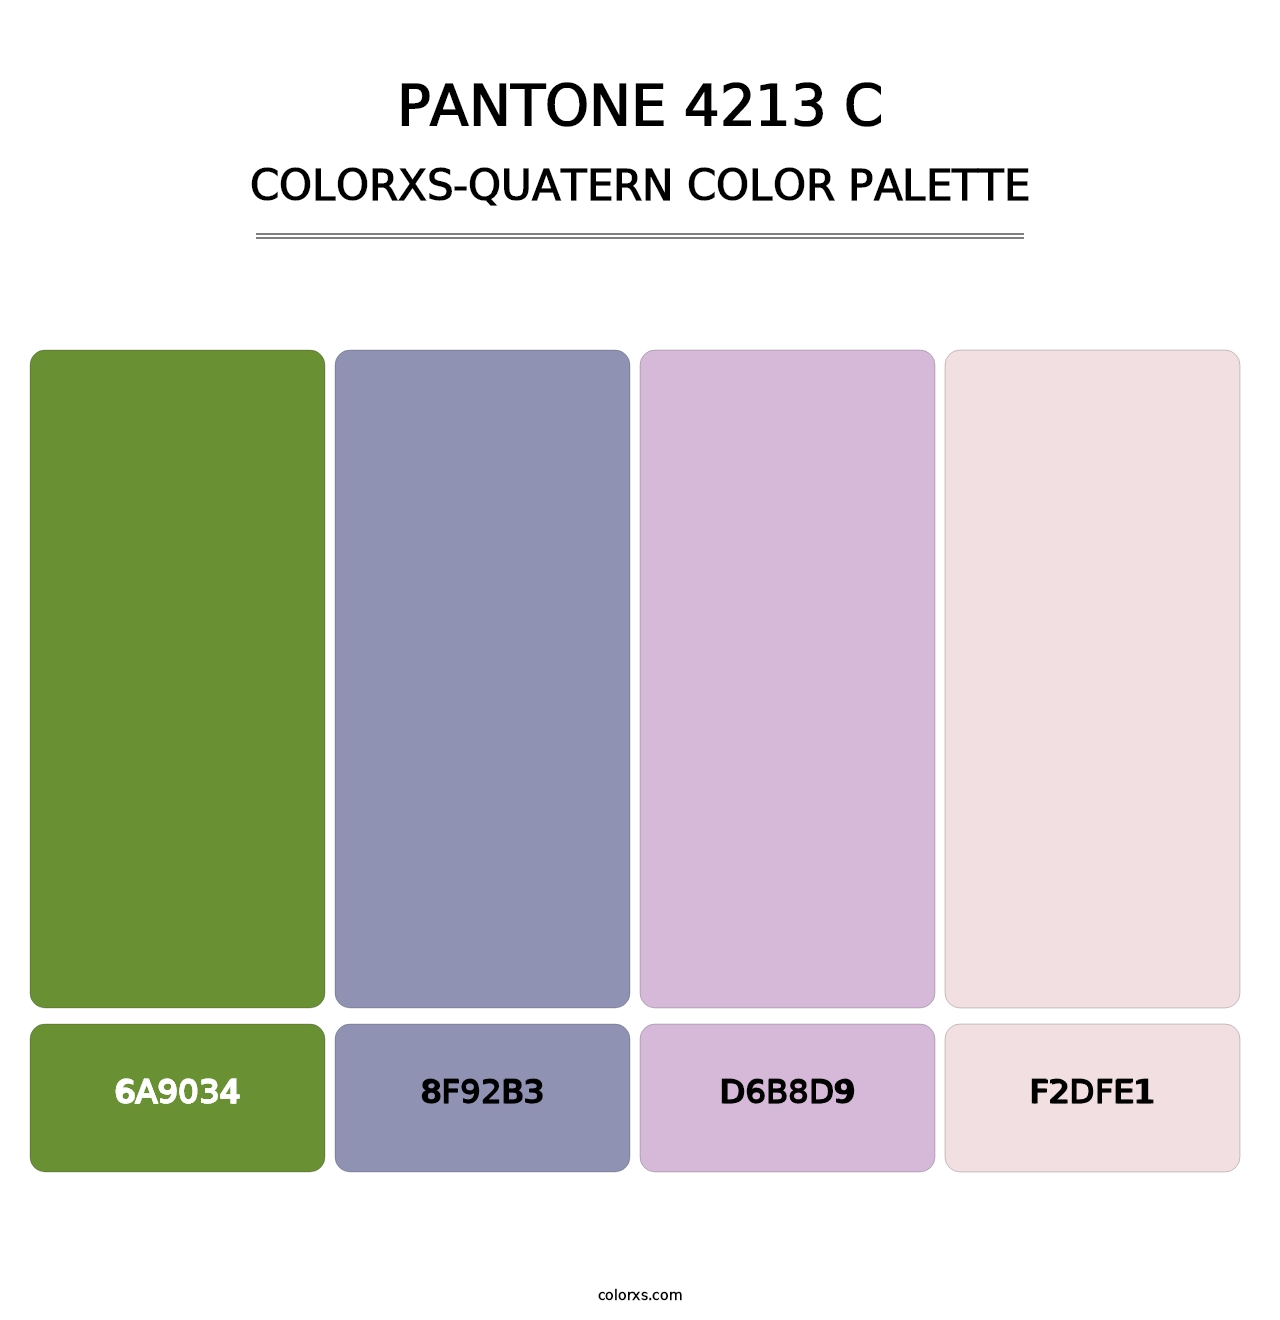 PANTONE 4213 C - Colorxs Quatern Palette